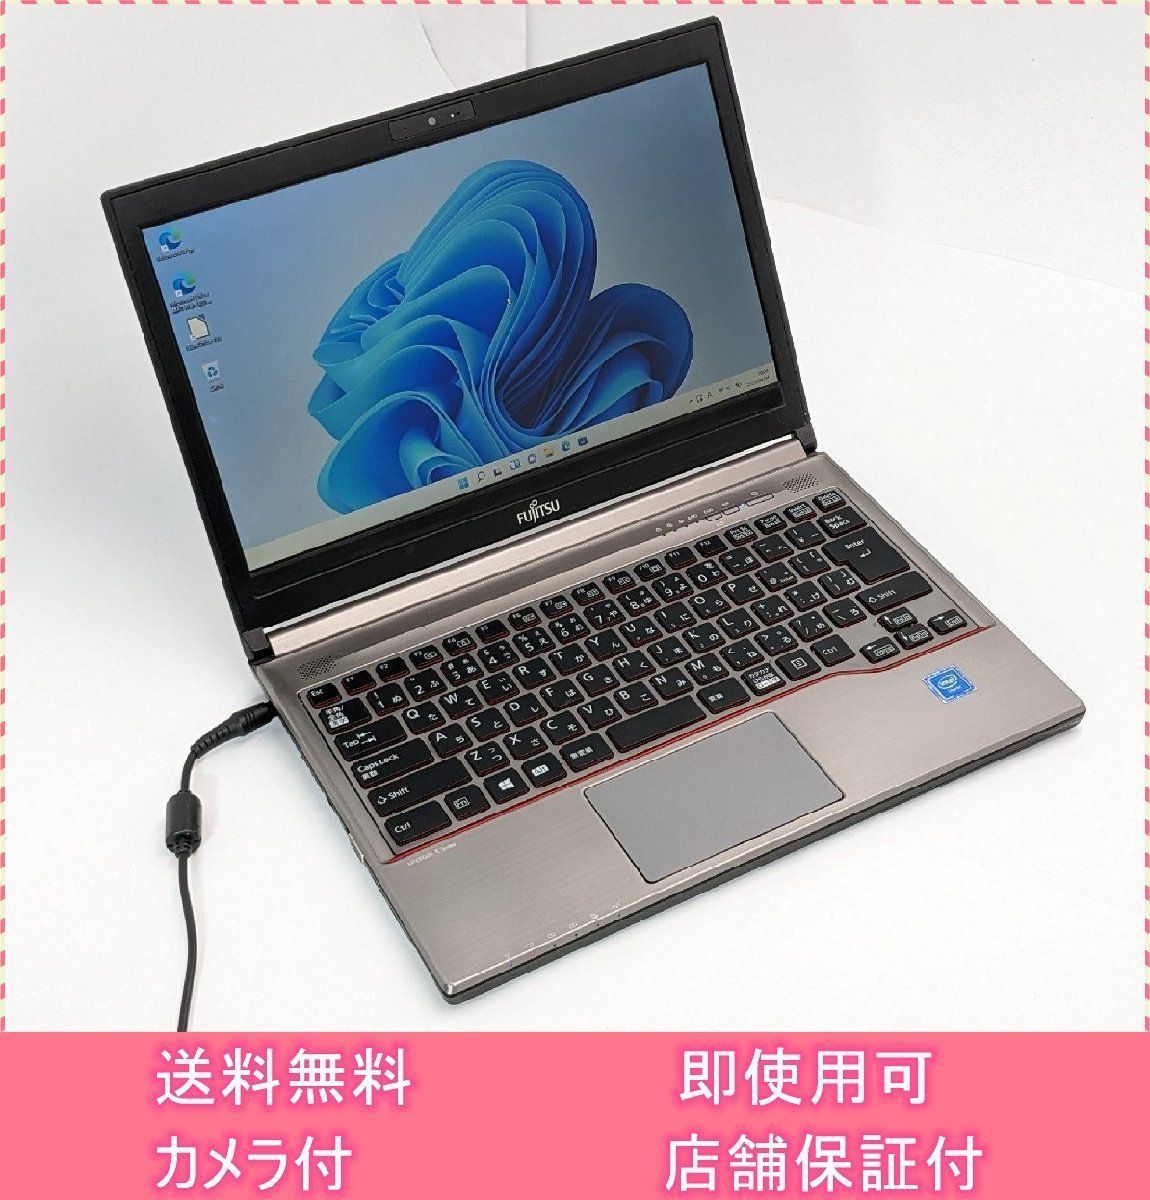 激安価格 在庫一掃 送料無料 日本製 13.3型 ノートPC 富士通 E736/P